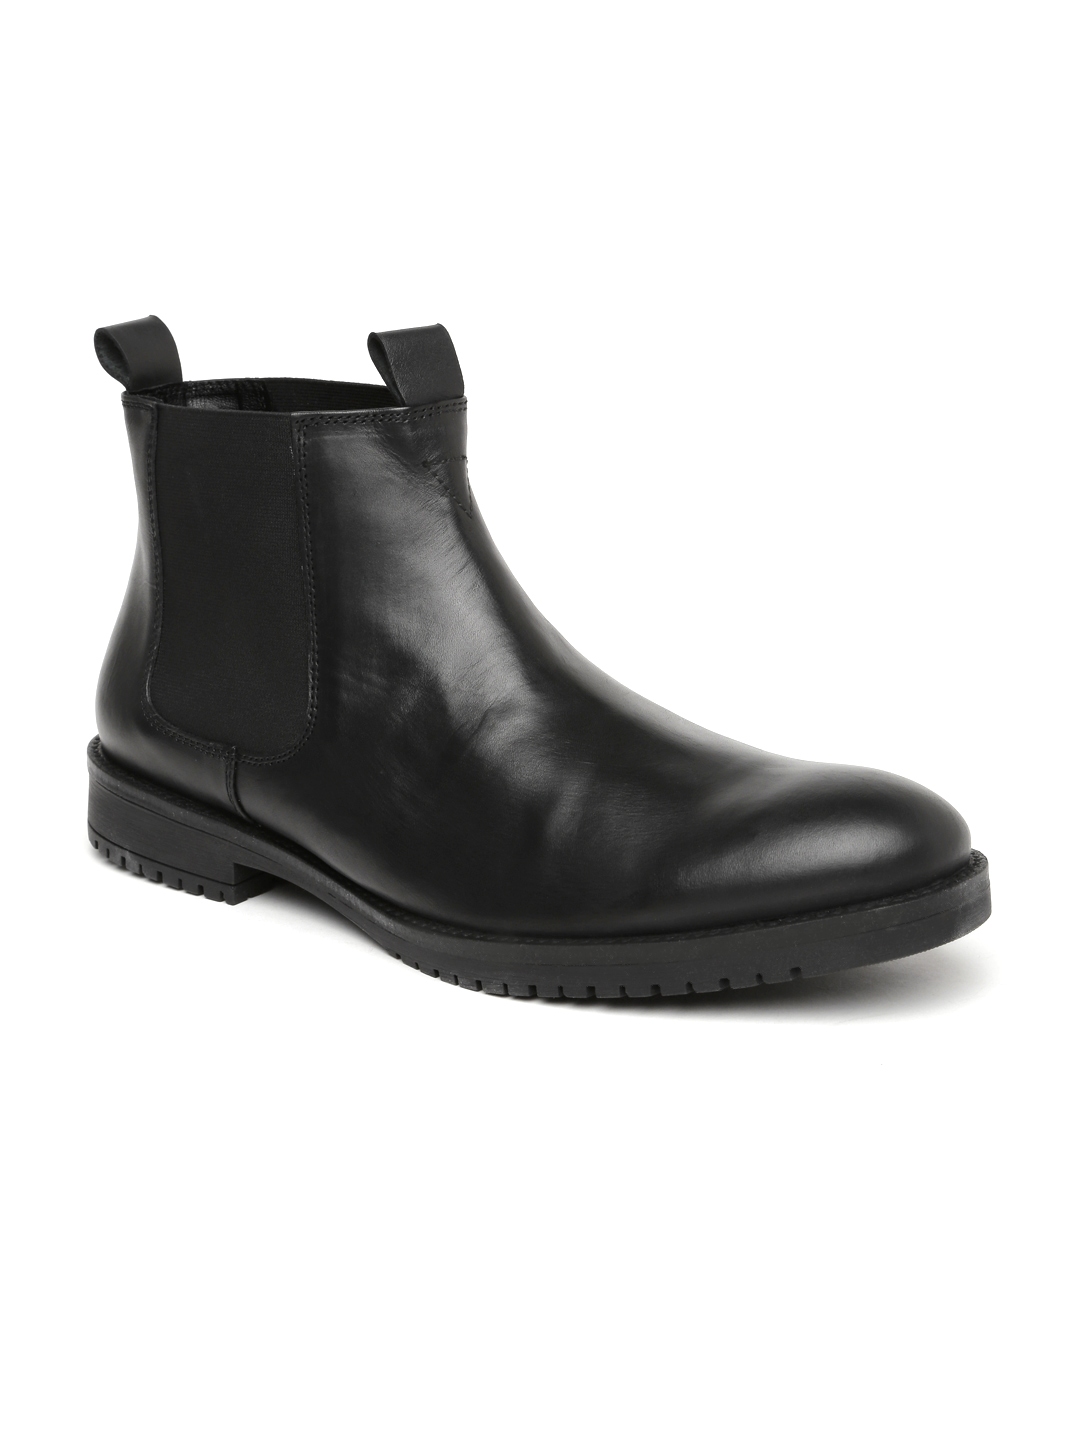 Men Black Chelsea Boots - Boots for Men 1387618 |